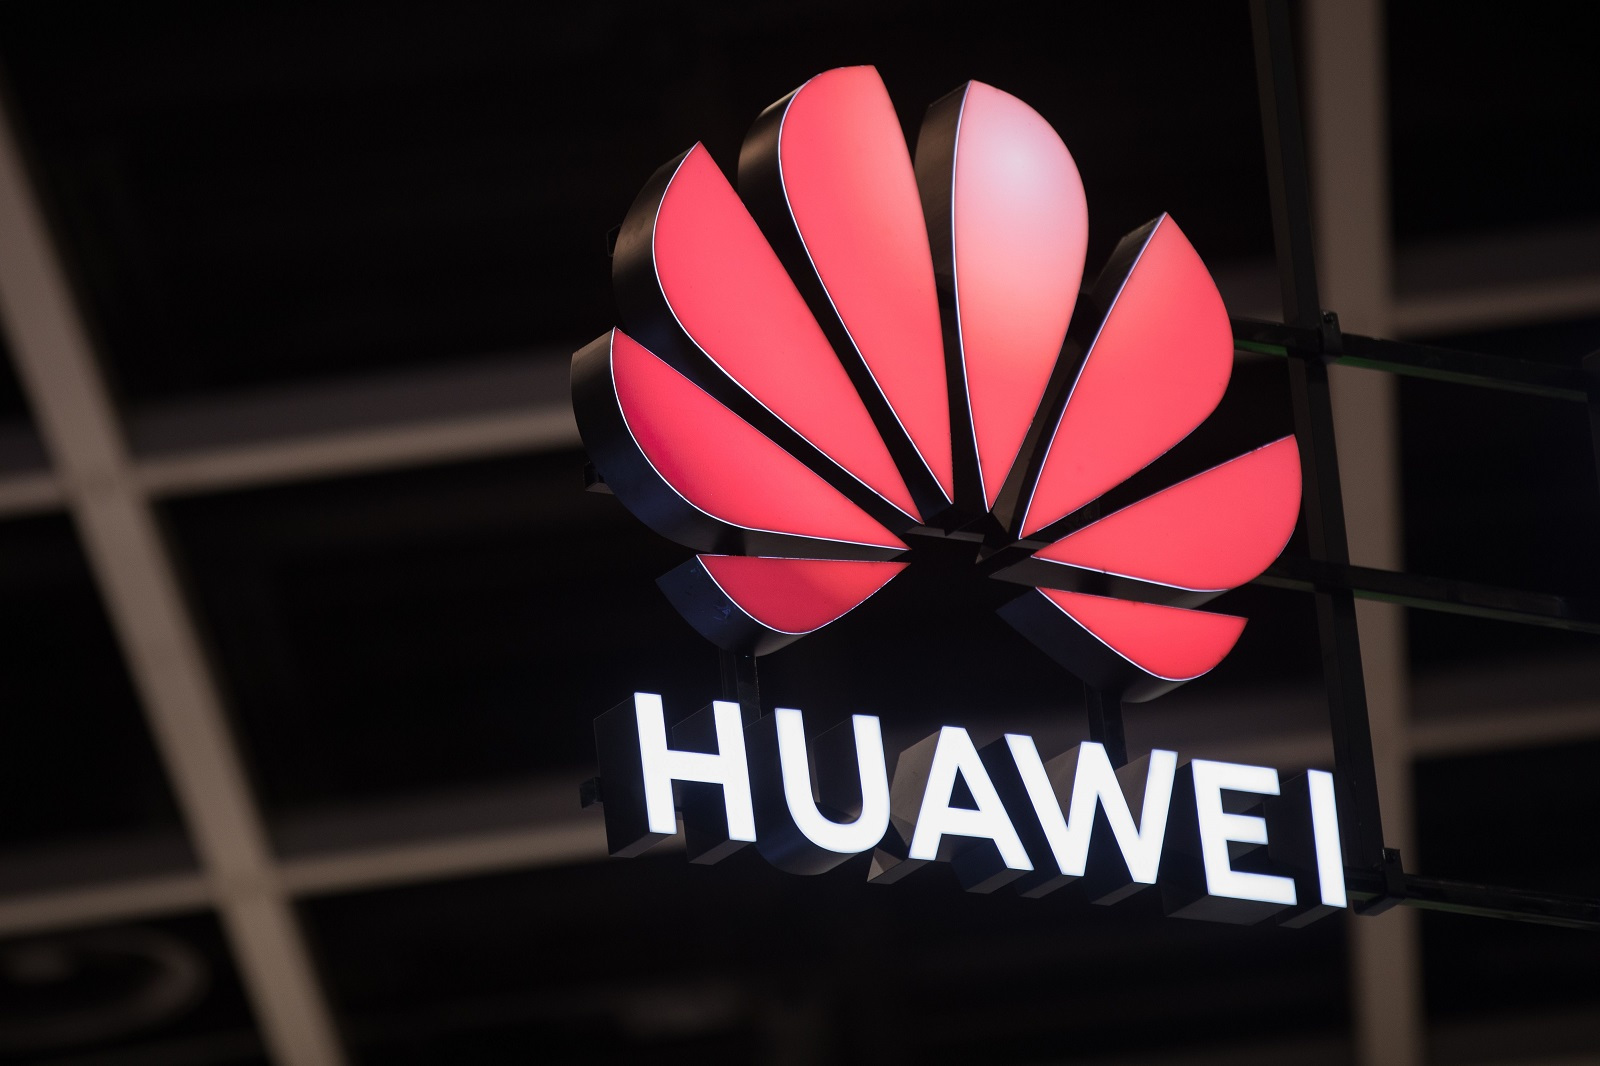 Rincian lebih lanjut tentang layar dan kamera Huawei Mate 30 terungkap